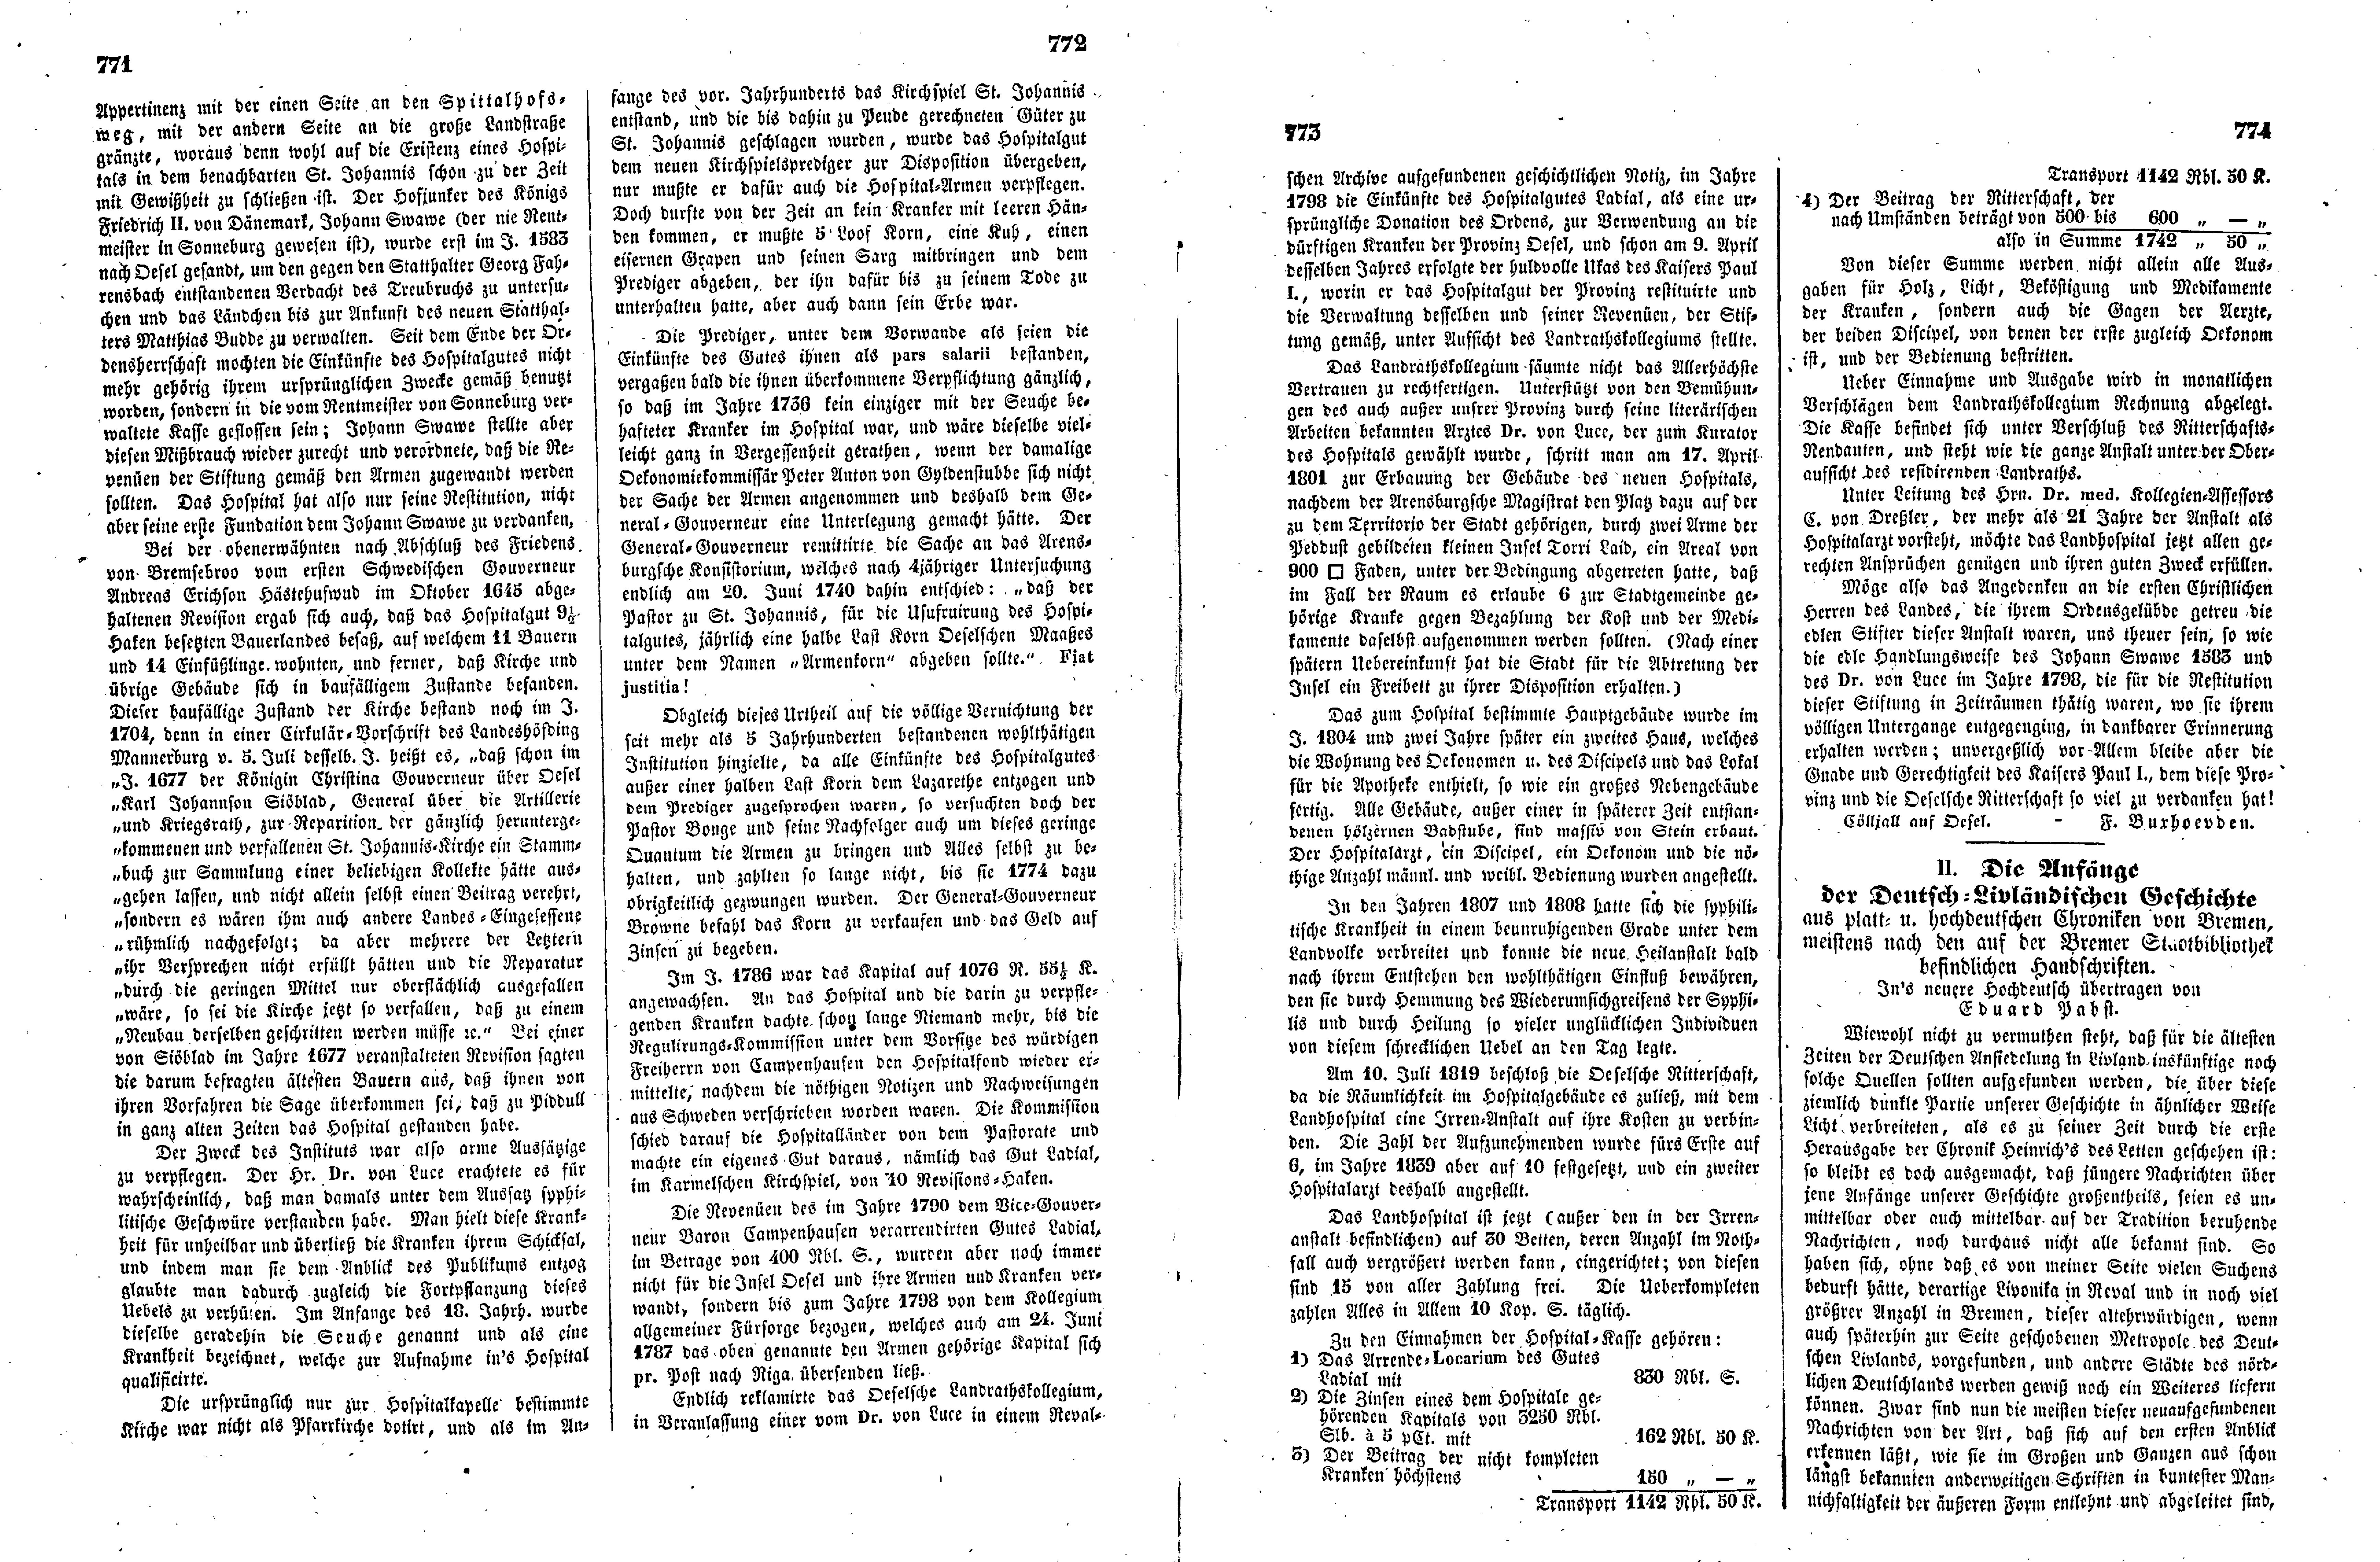 Das Inland [14] (1849) | 198. (771-774) Haupttext